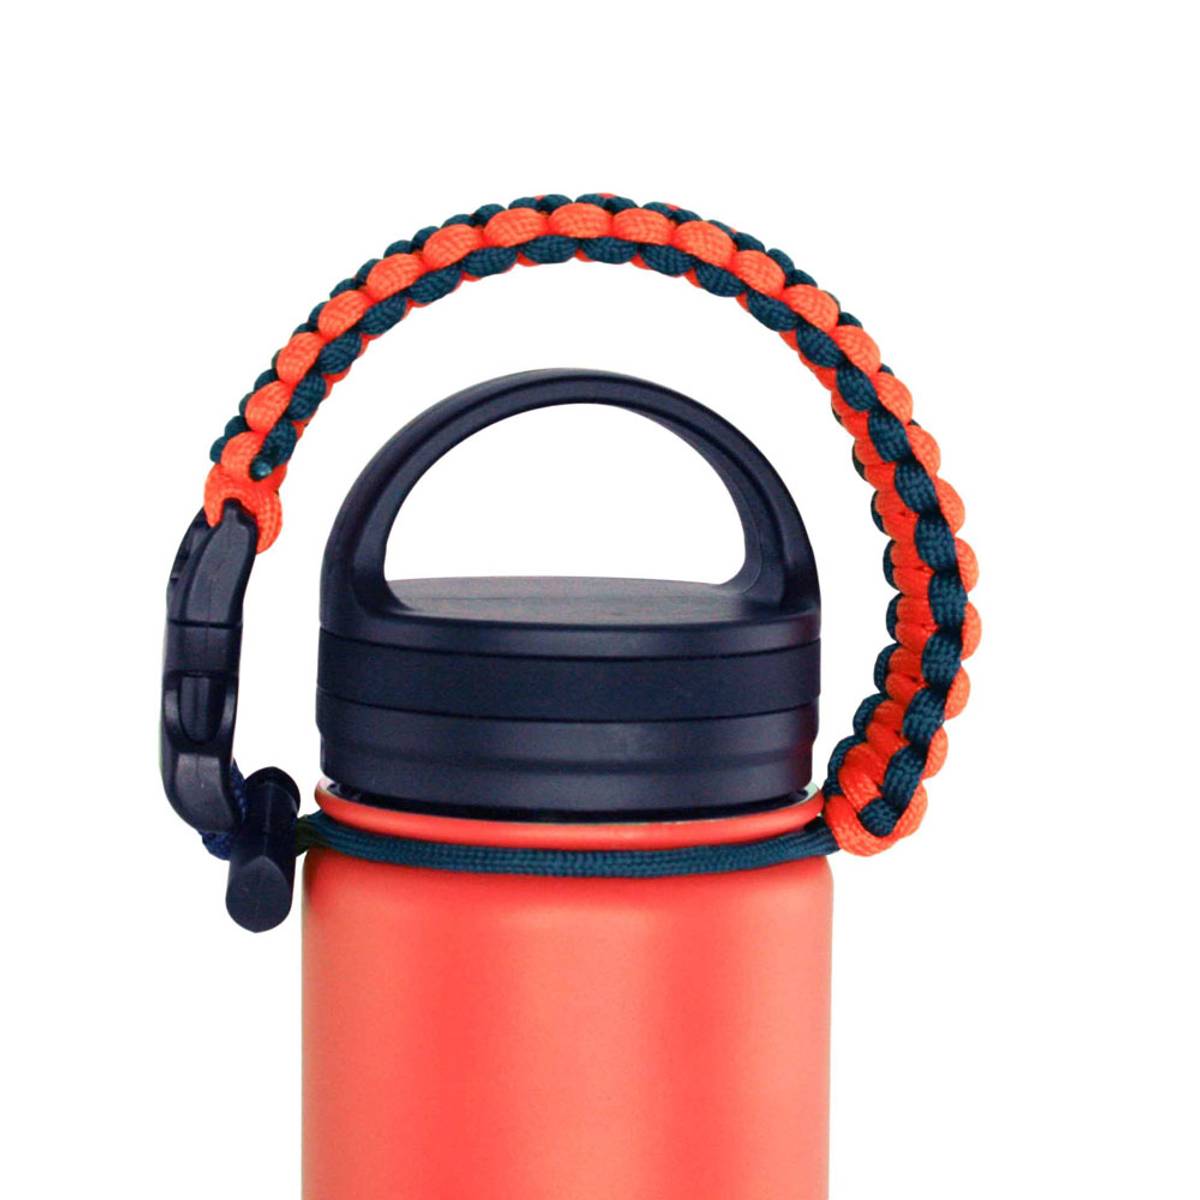 Thermosflasche - Rot - 0,54 Liter Inhalt